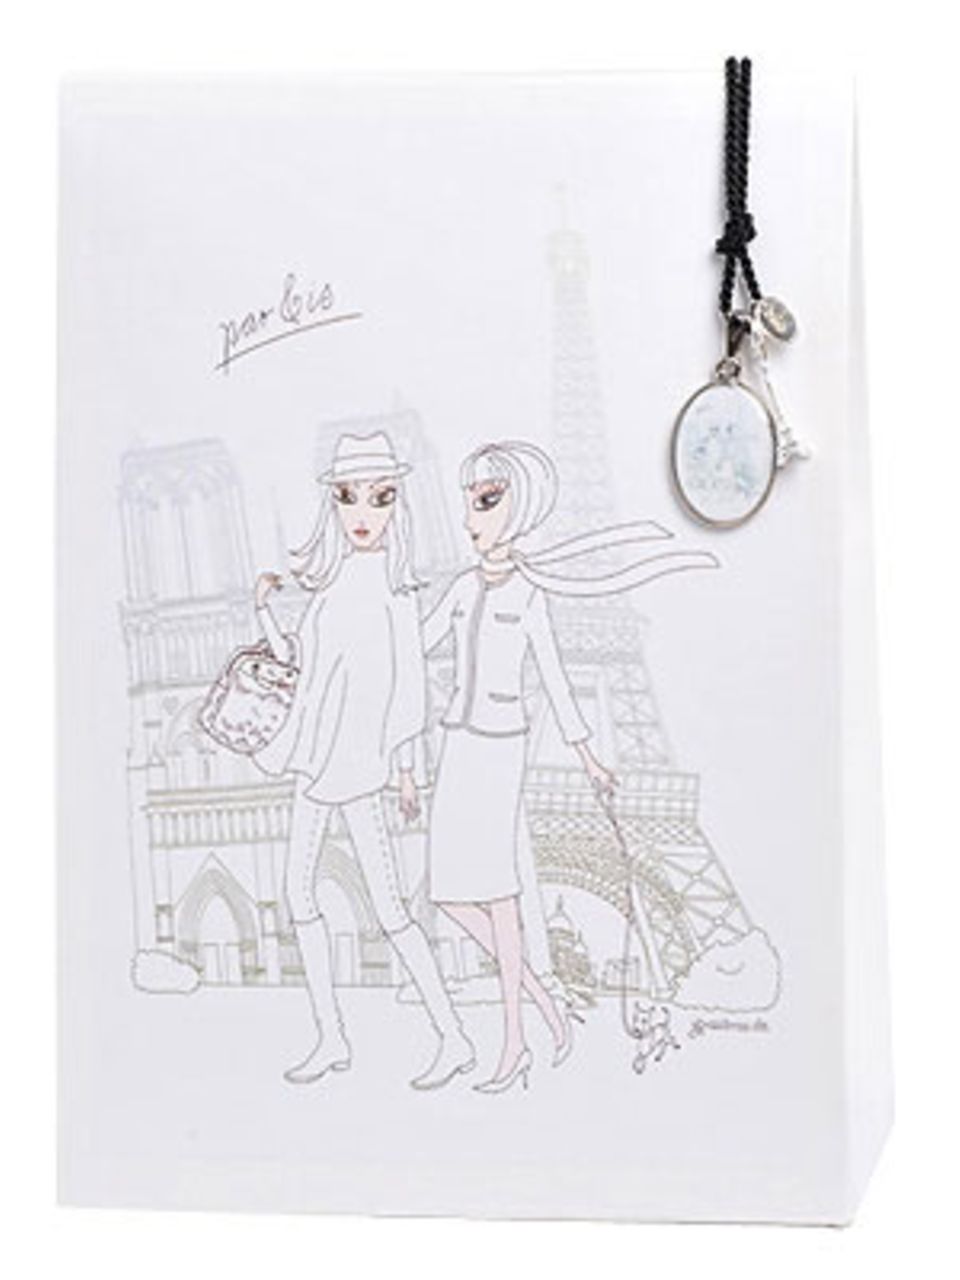 Die "Wundertüte Paris" enthält eine lange Kette mit liebevoll gestalteten kleinen Charms - passend zum Thema, versteht sich! Von brasi&brasi, um 50 Euro. Über www.brasibrasi.com.